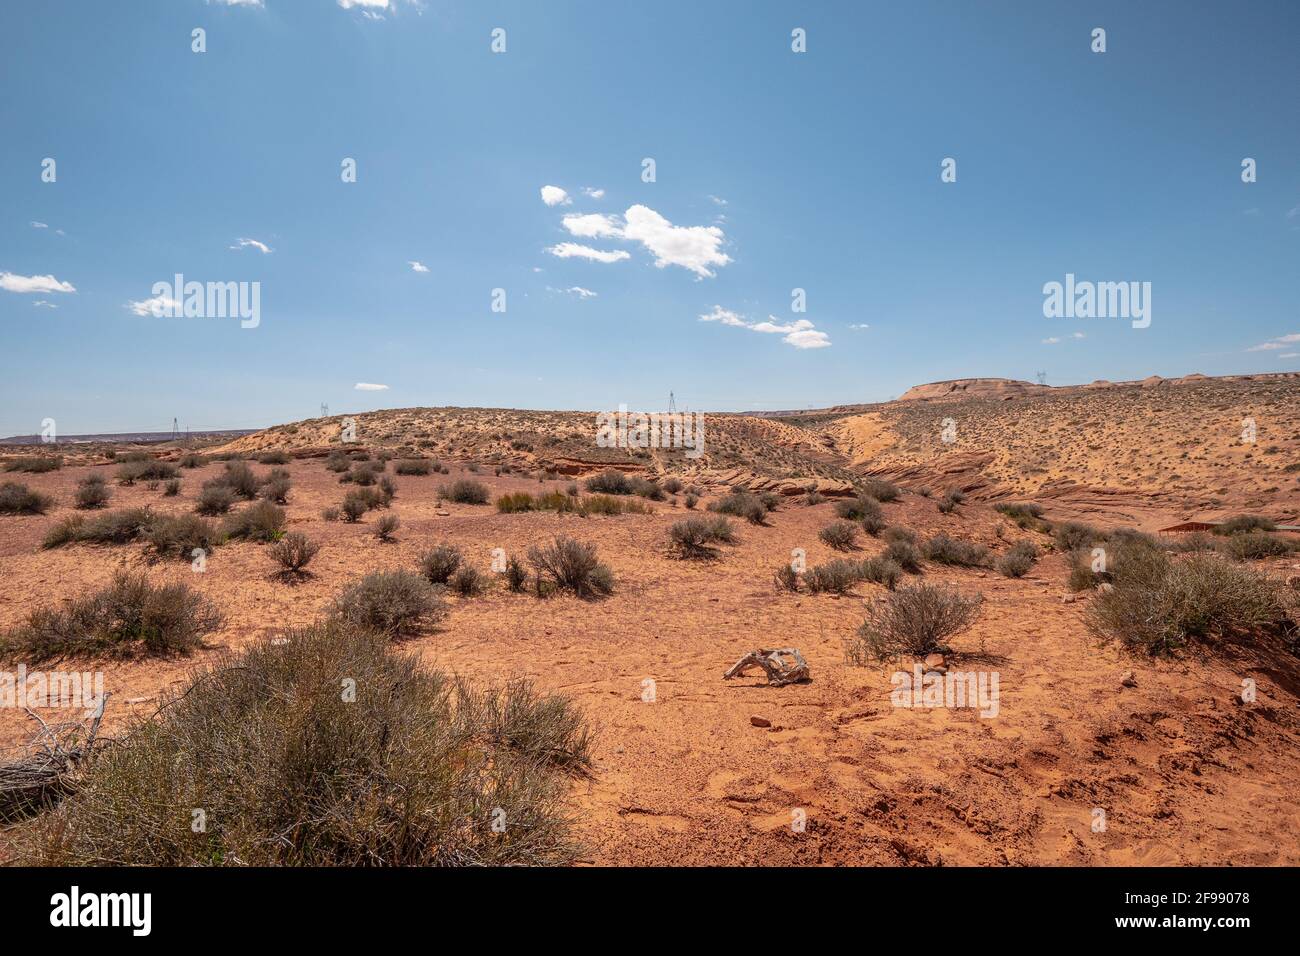 El desierto de Utah - fotografía de viajes Foto de stock